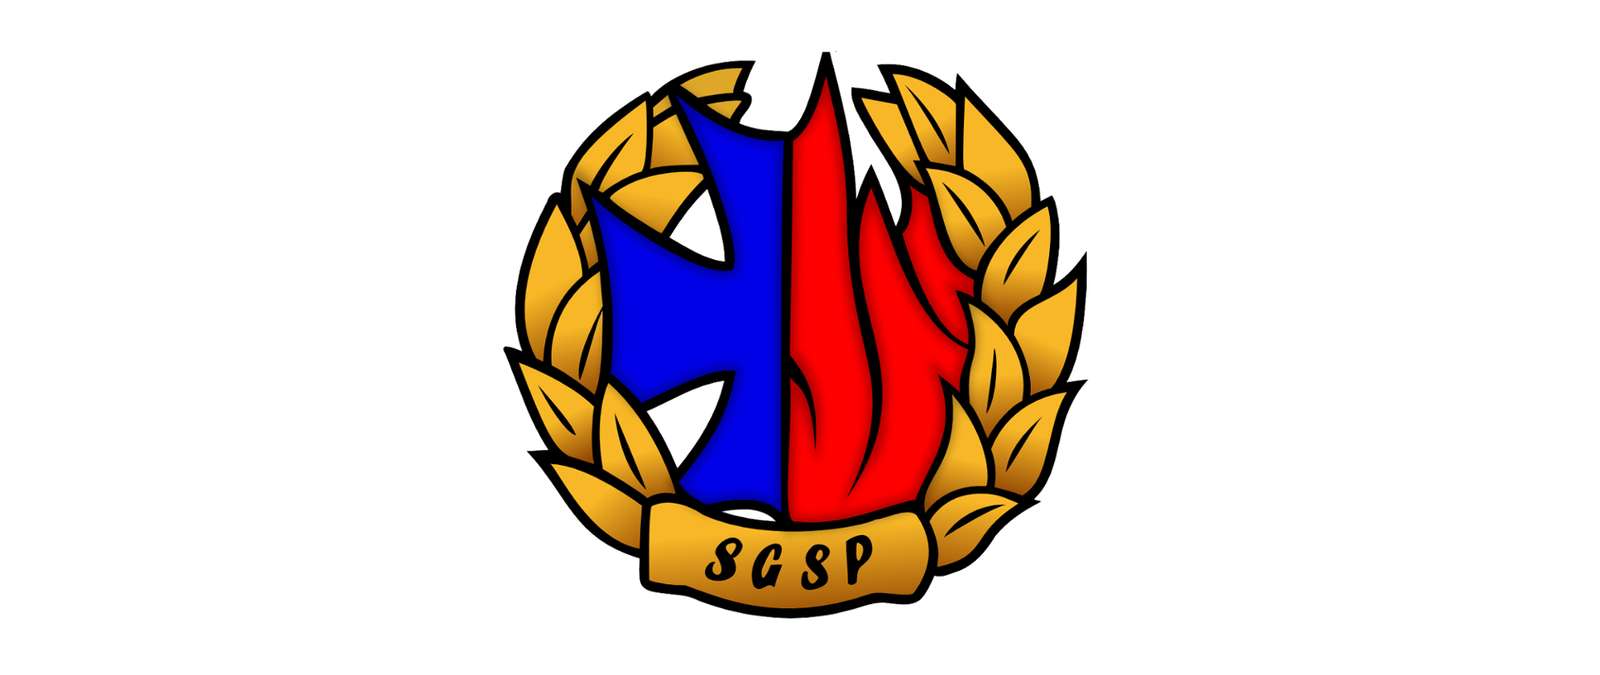 Fire Department SGSP logo online puzzle